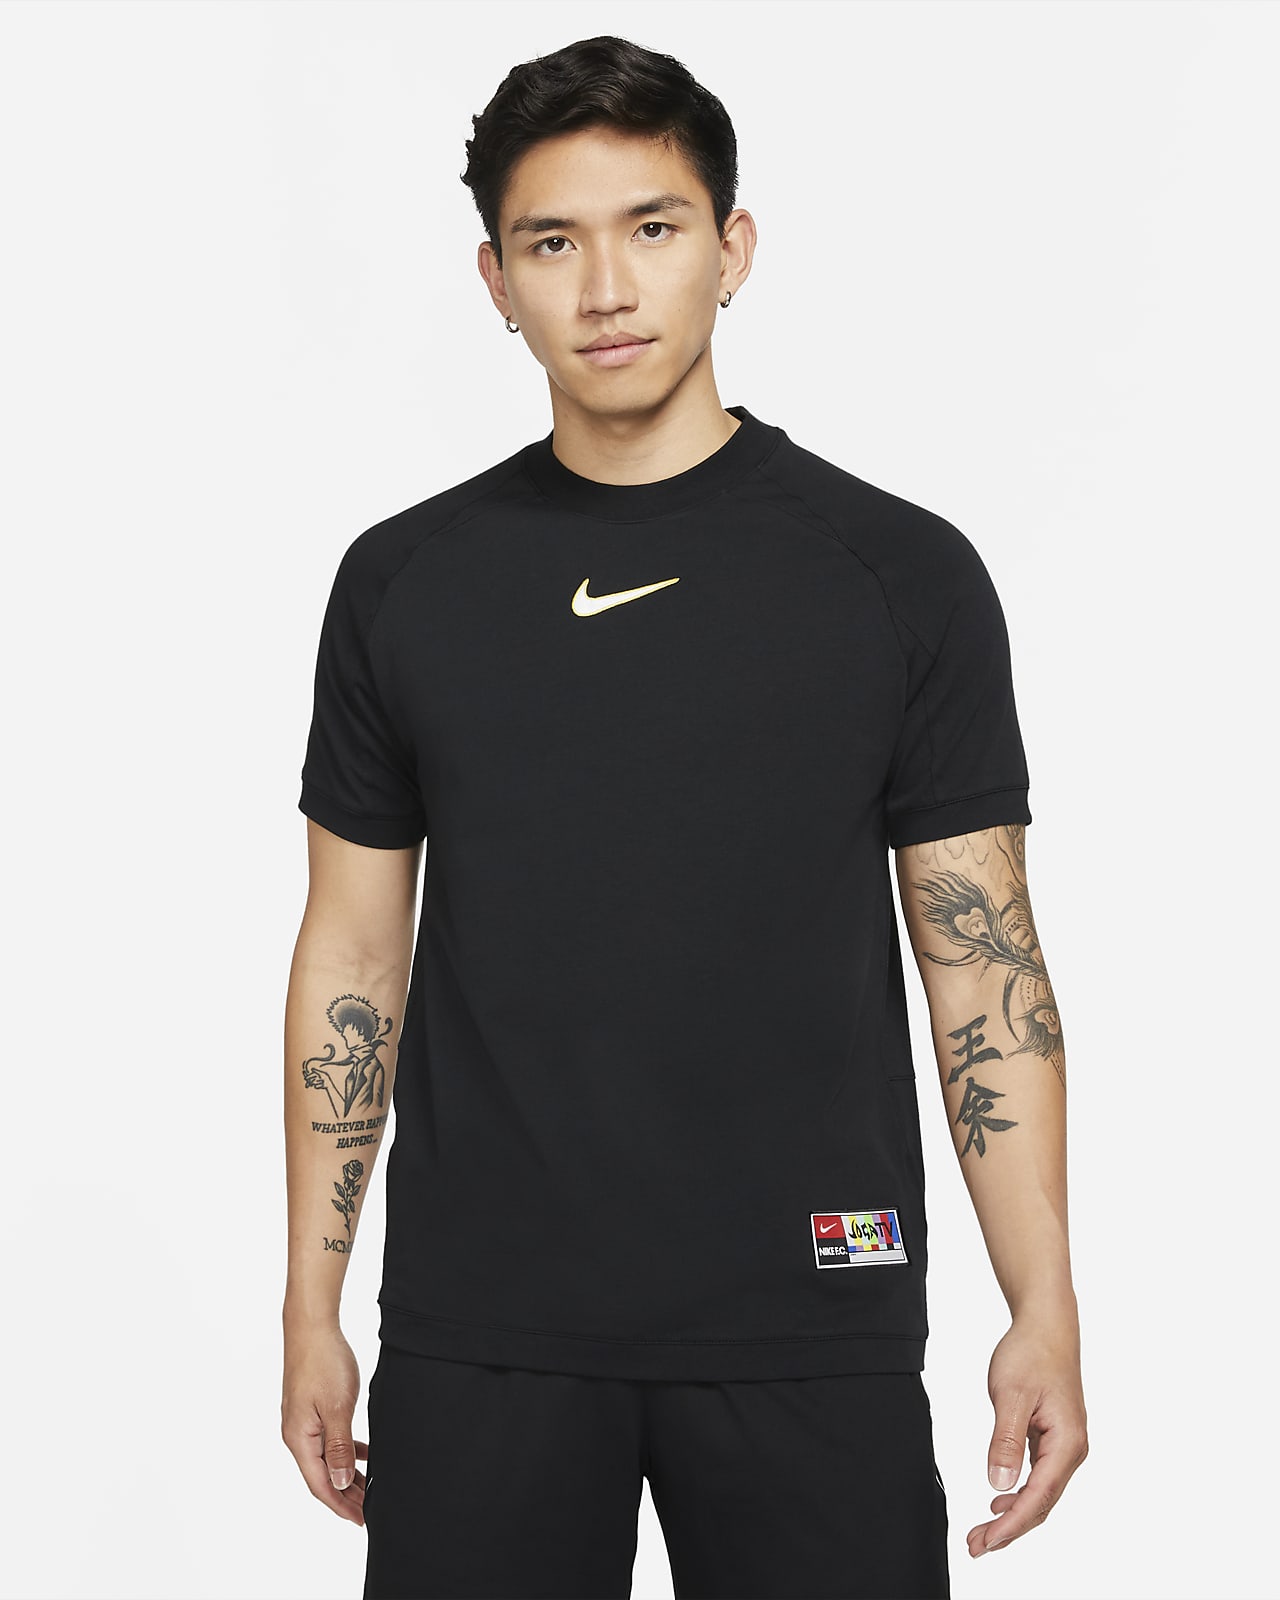 Nike公式 ナイキ F C ホーム メンズ サッカーユニフォーム オンラインストア 通販サイト